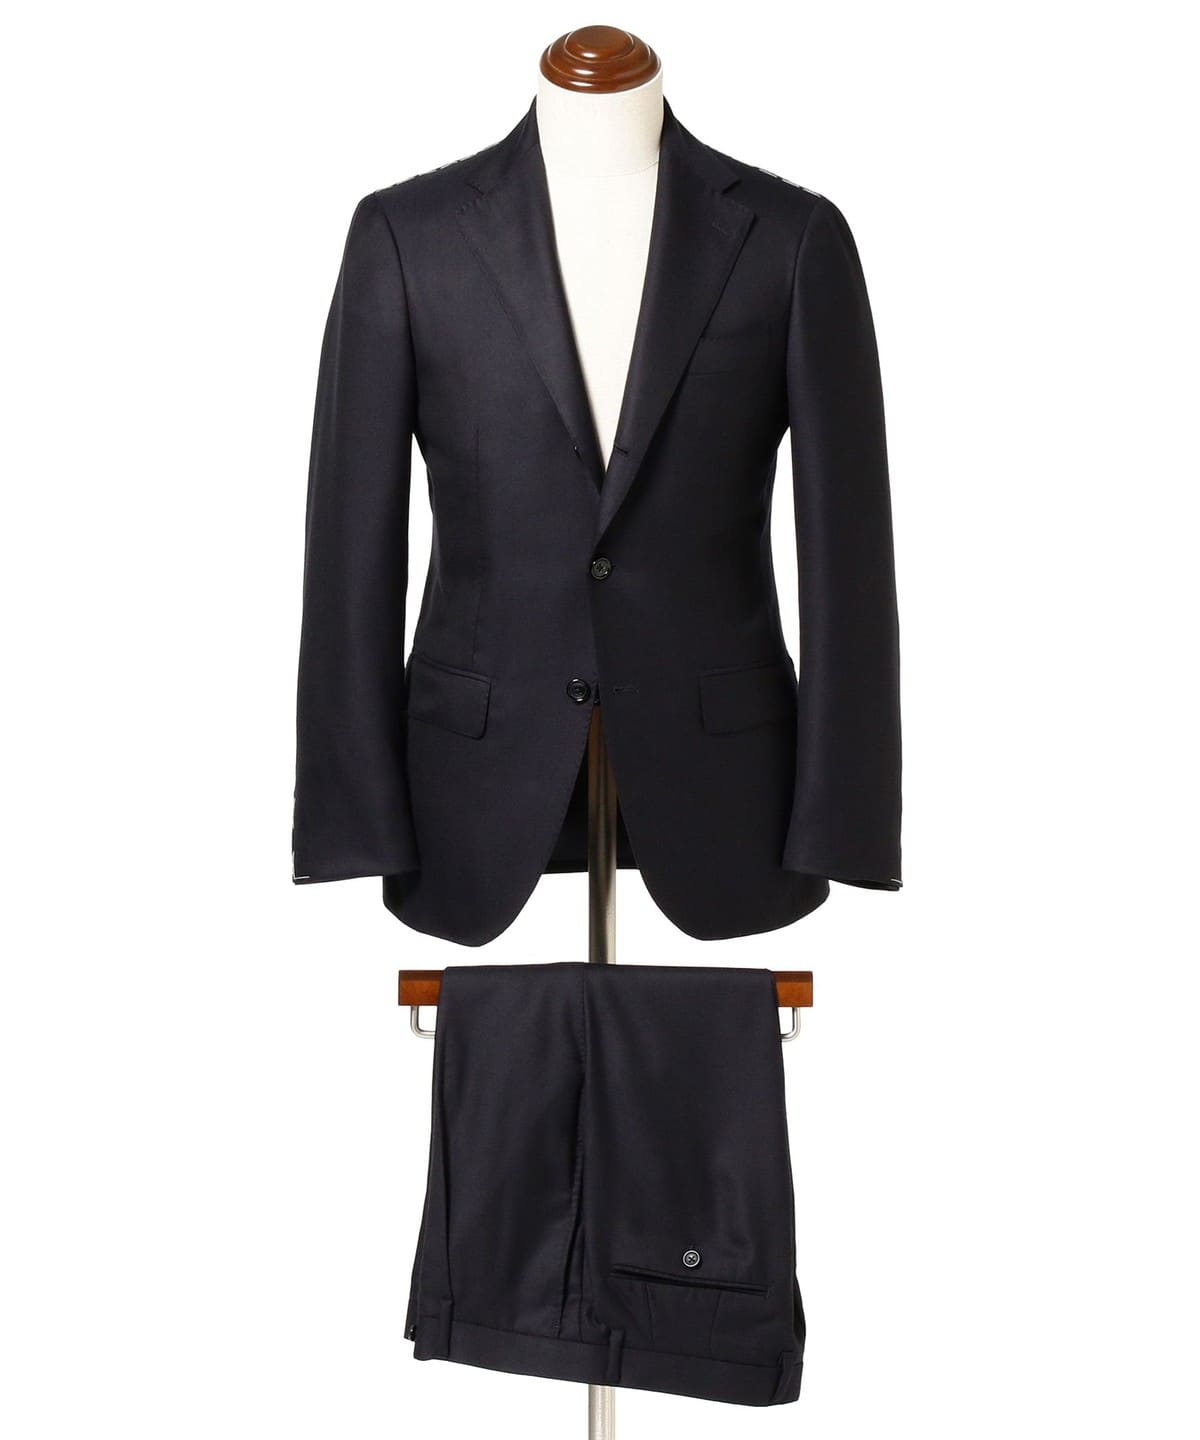 Brilla per il gusto / LORO PIANA FABRIC cashmere solid suit